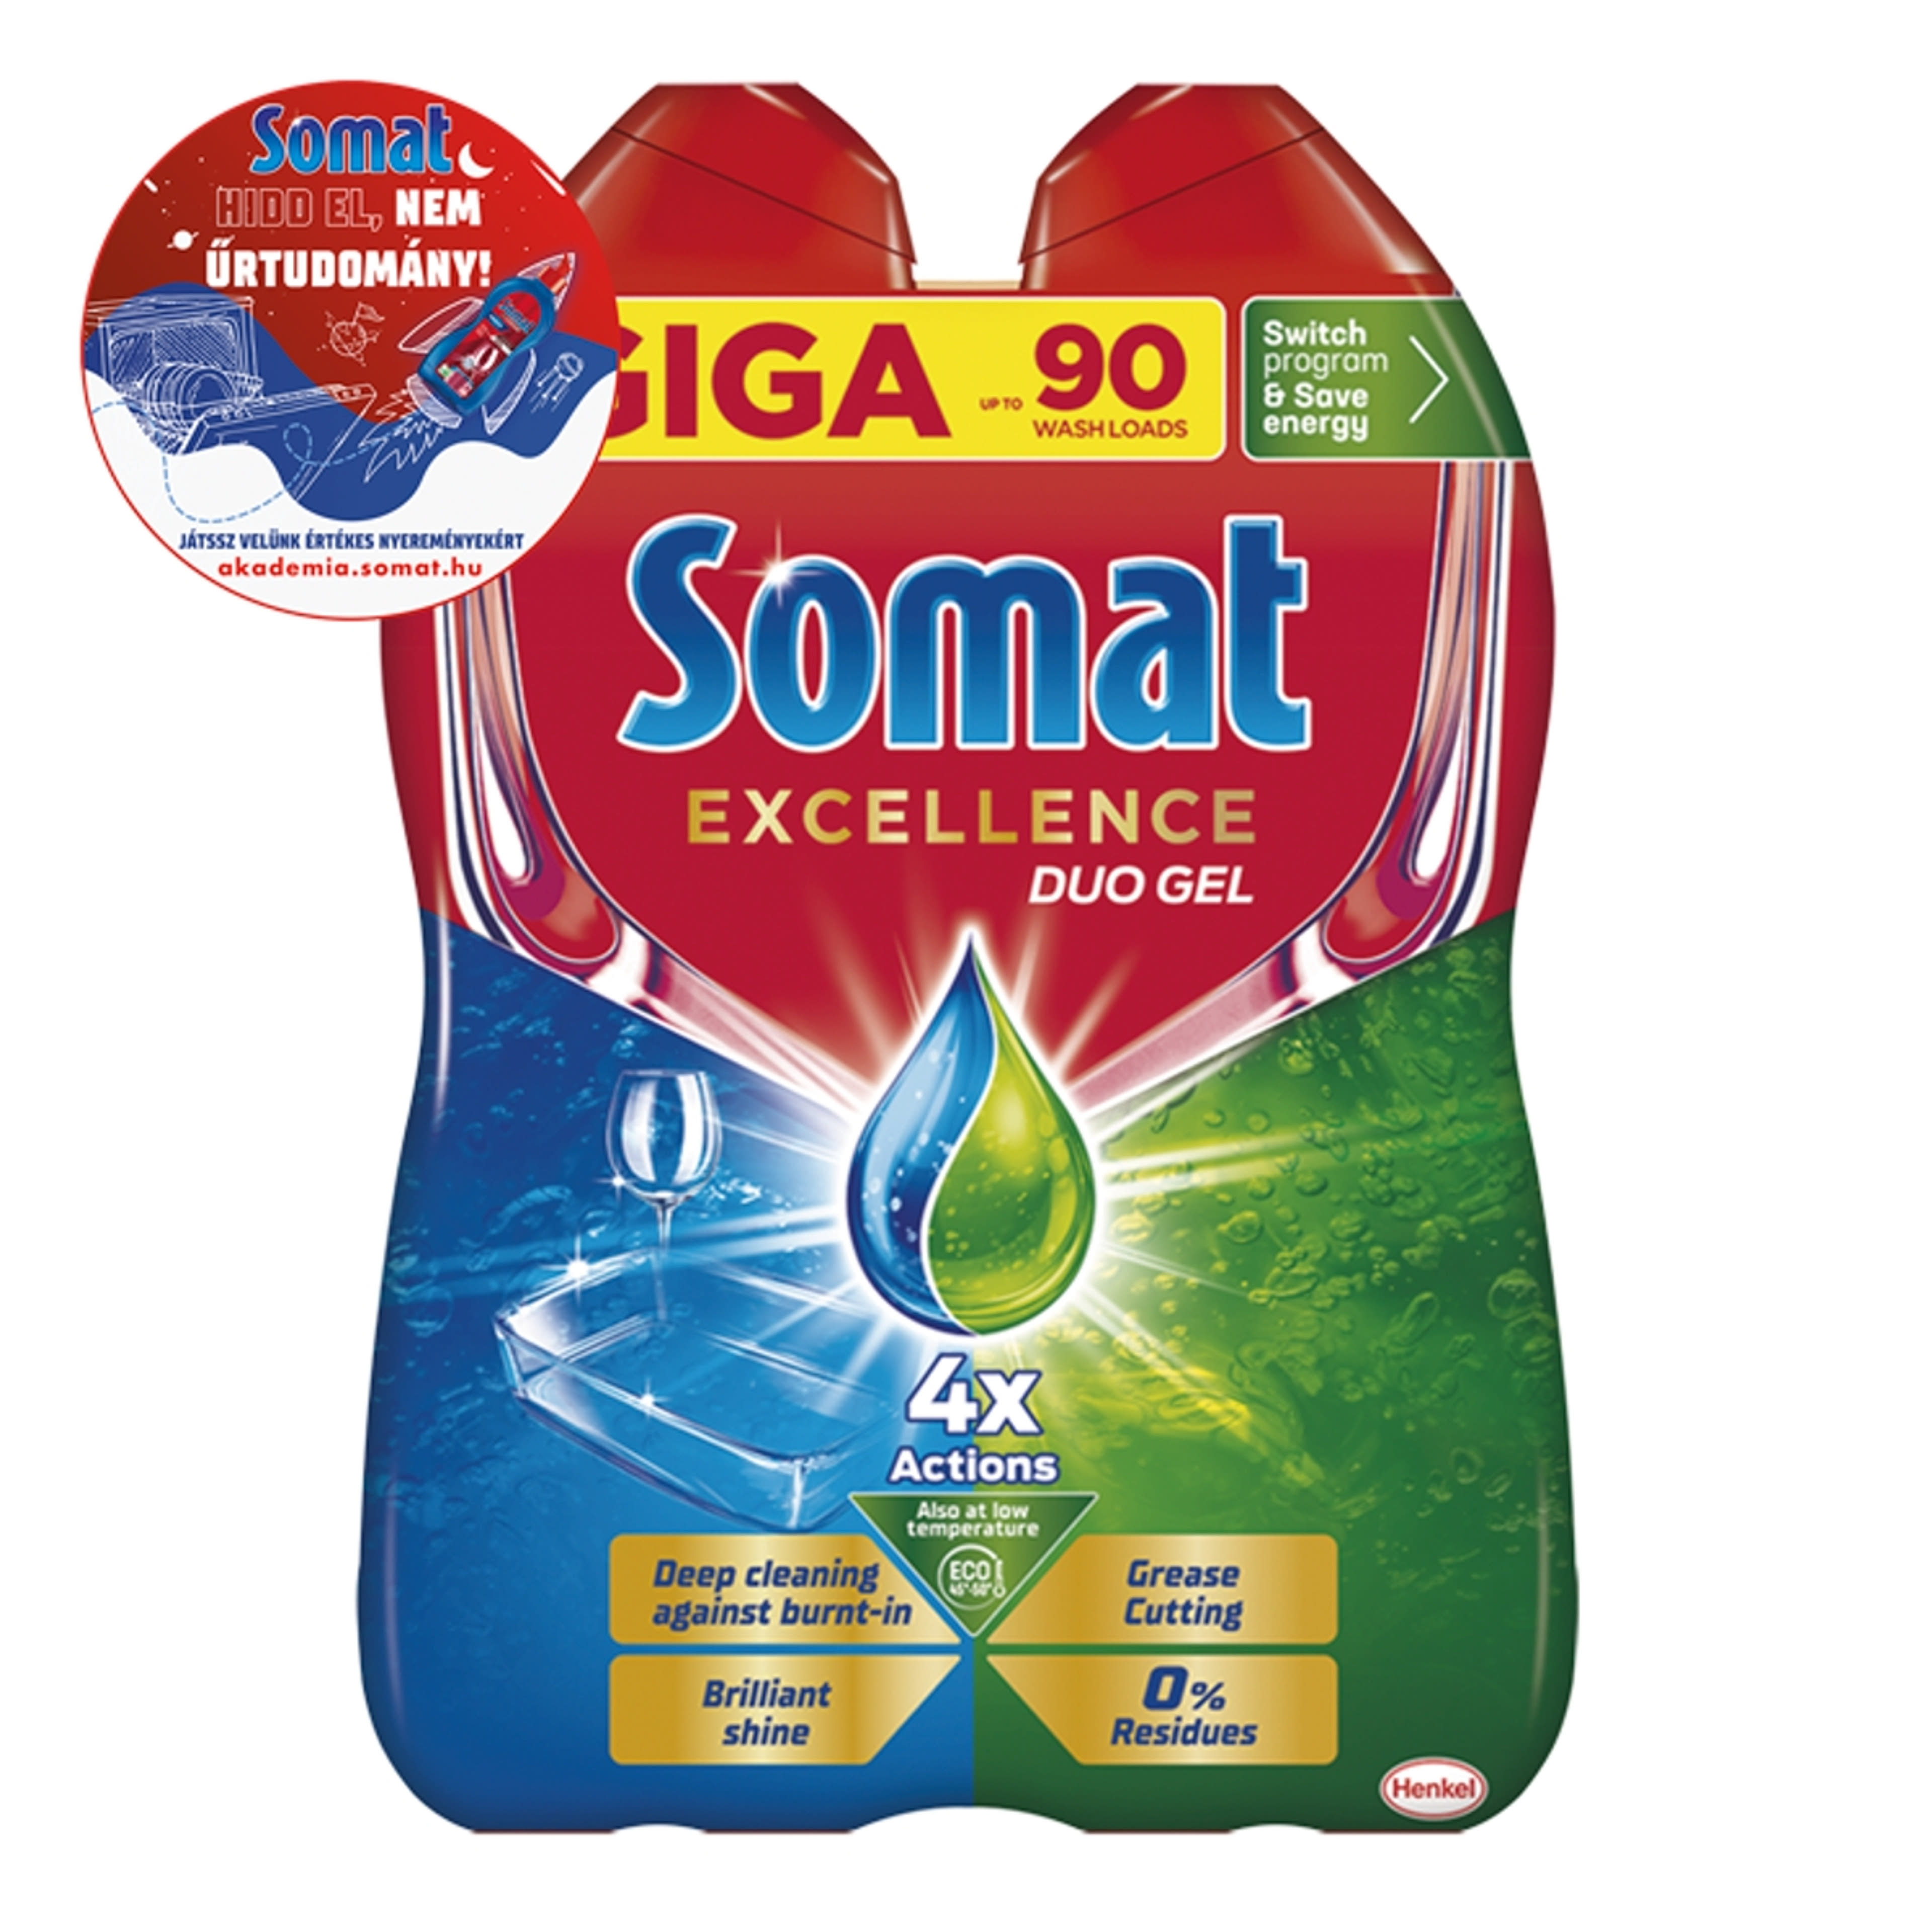 Somat Excellence Duo Gel gépi mosogatószer gél 90 mosogatás - 1620 ml